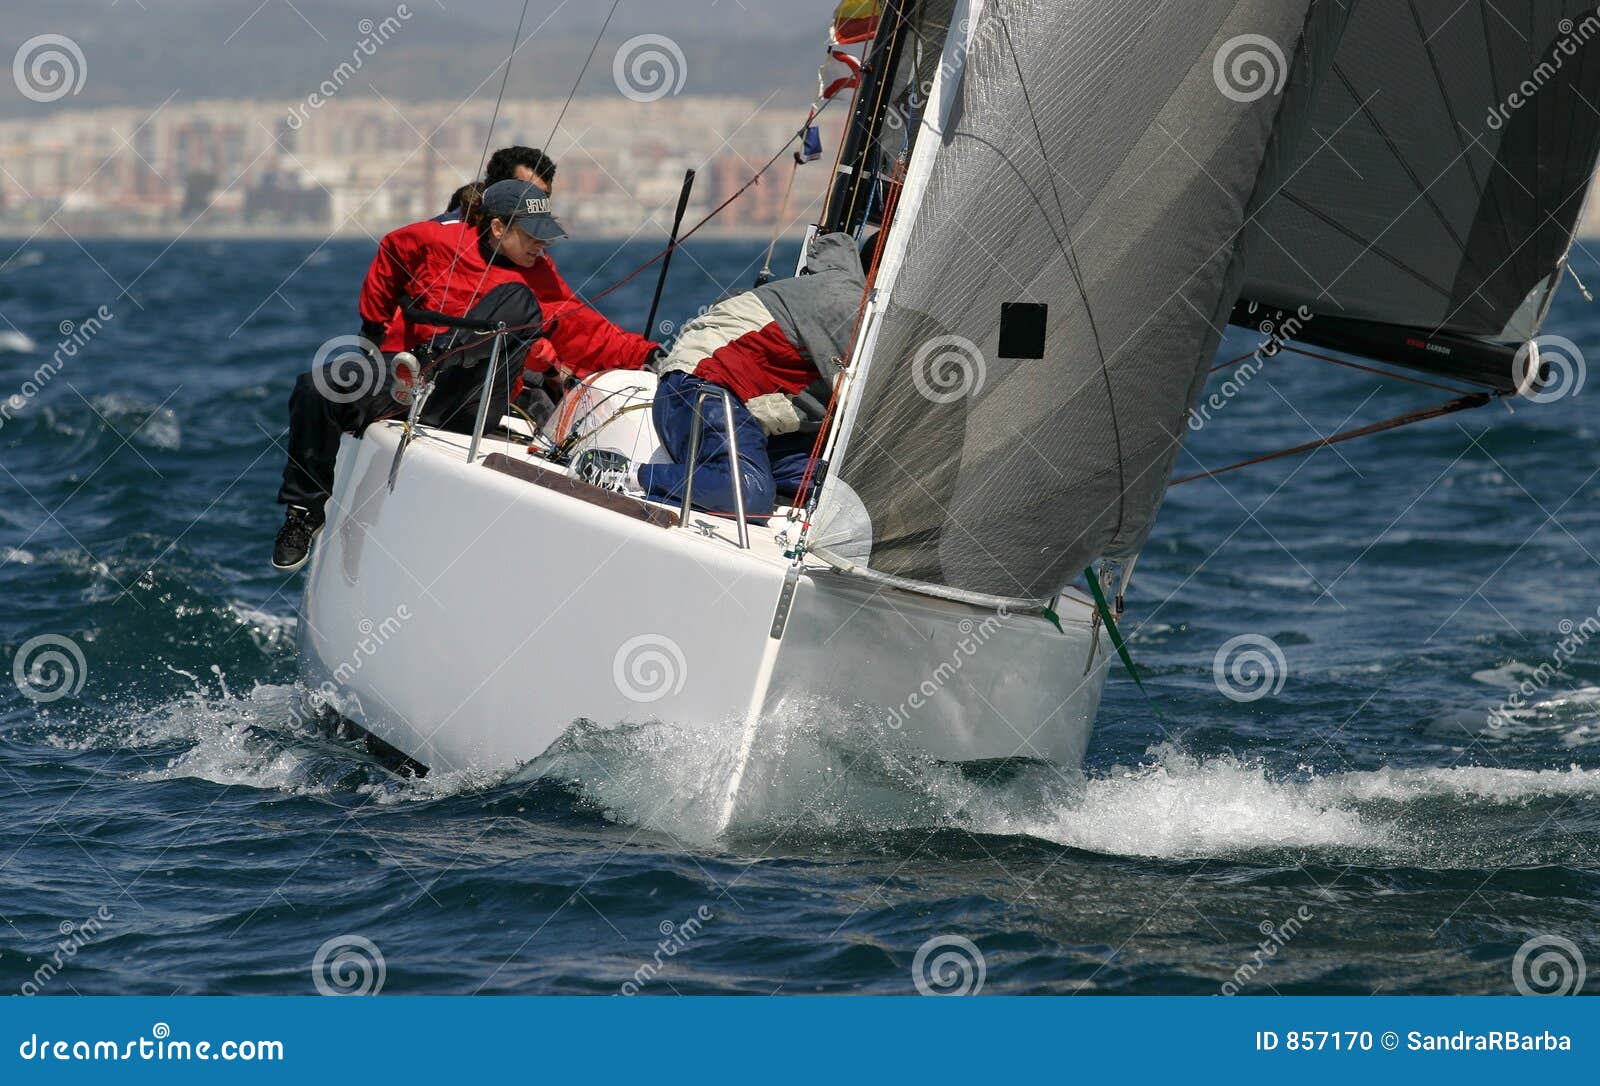 sailing, yachting #7